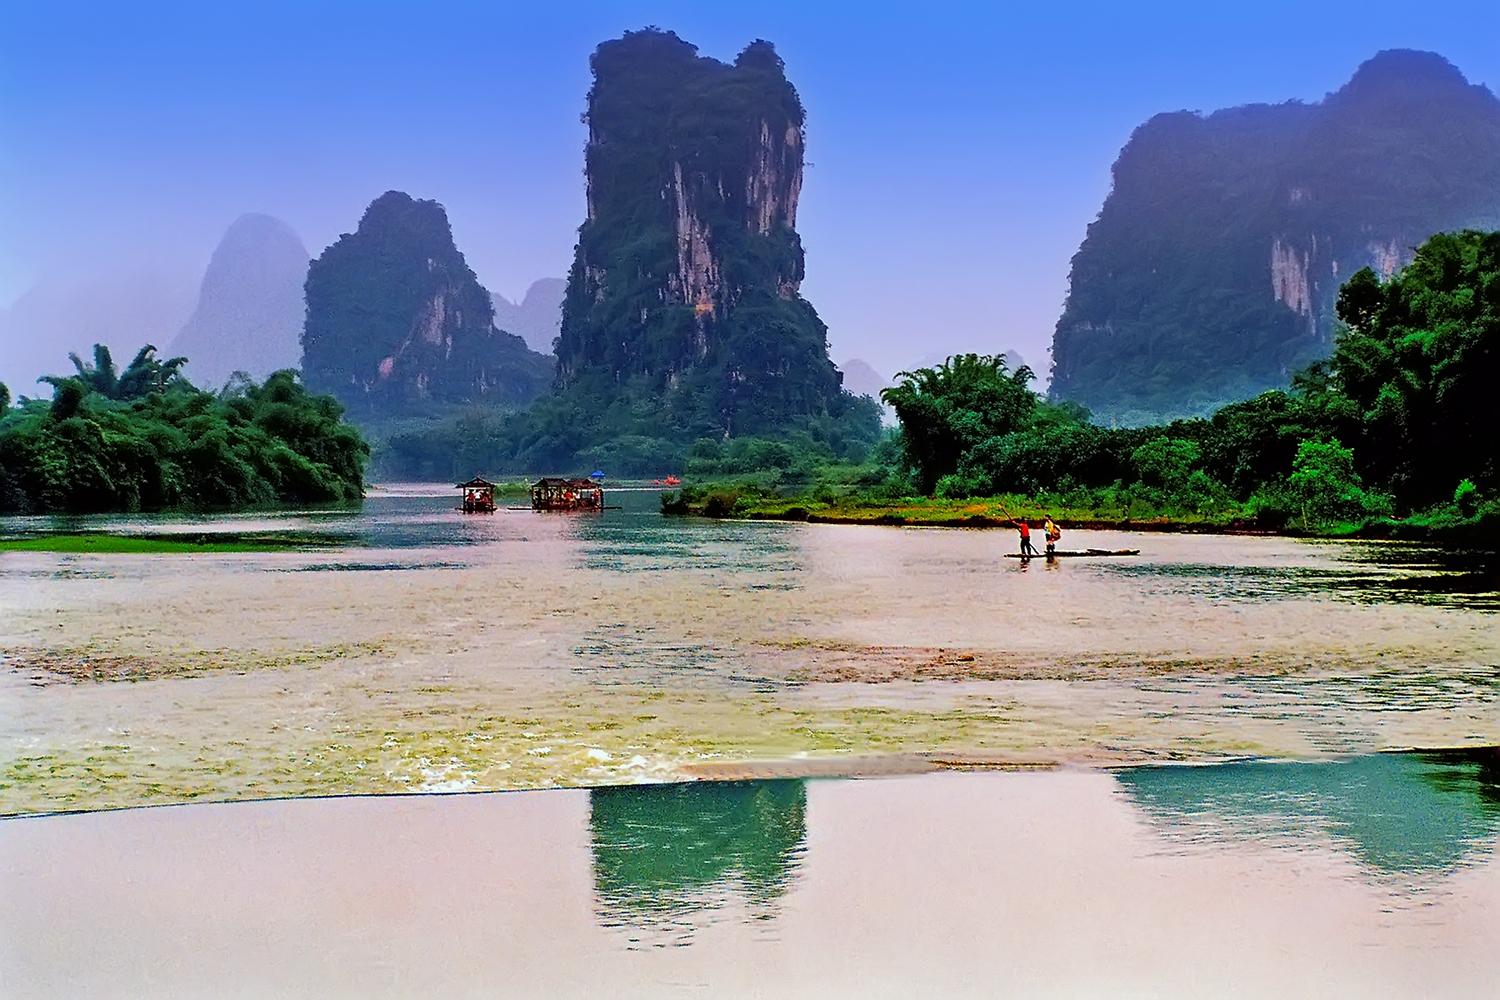 这组照片完美诠释了桂林的山山水水!